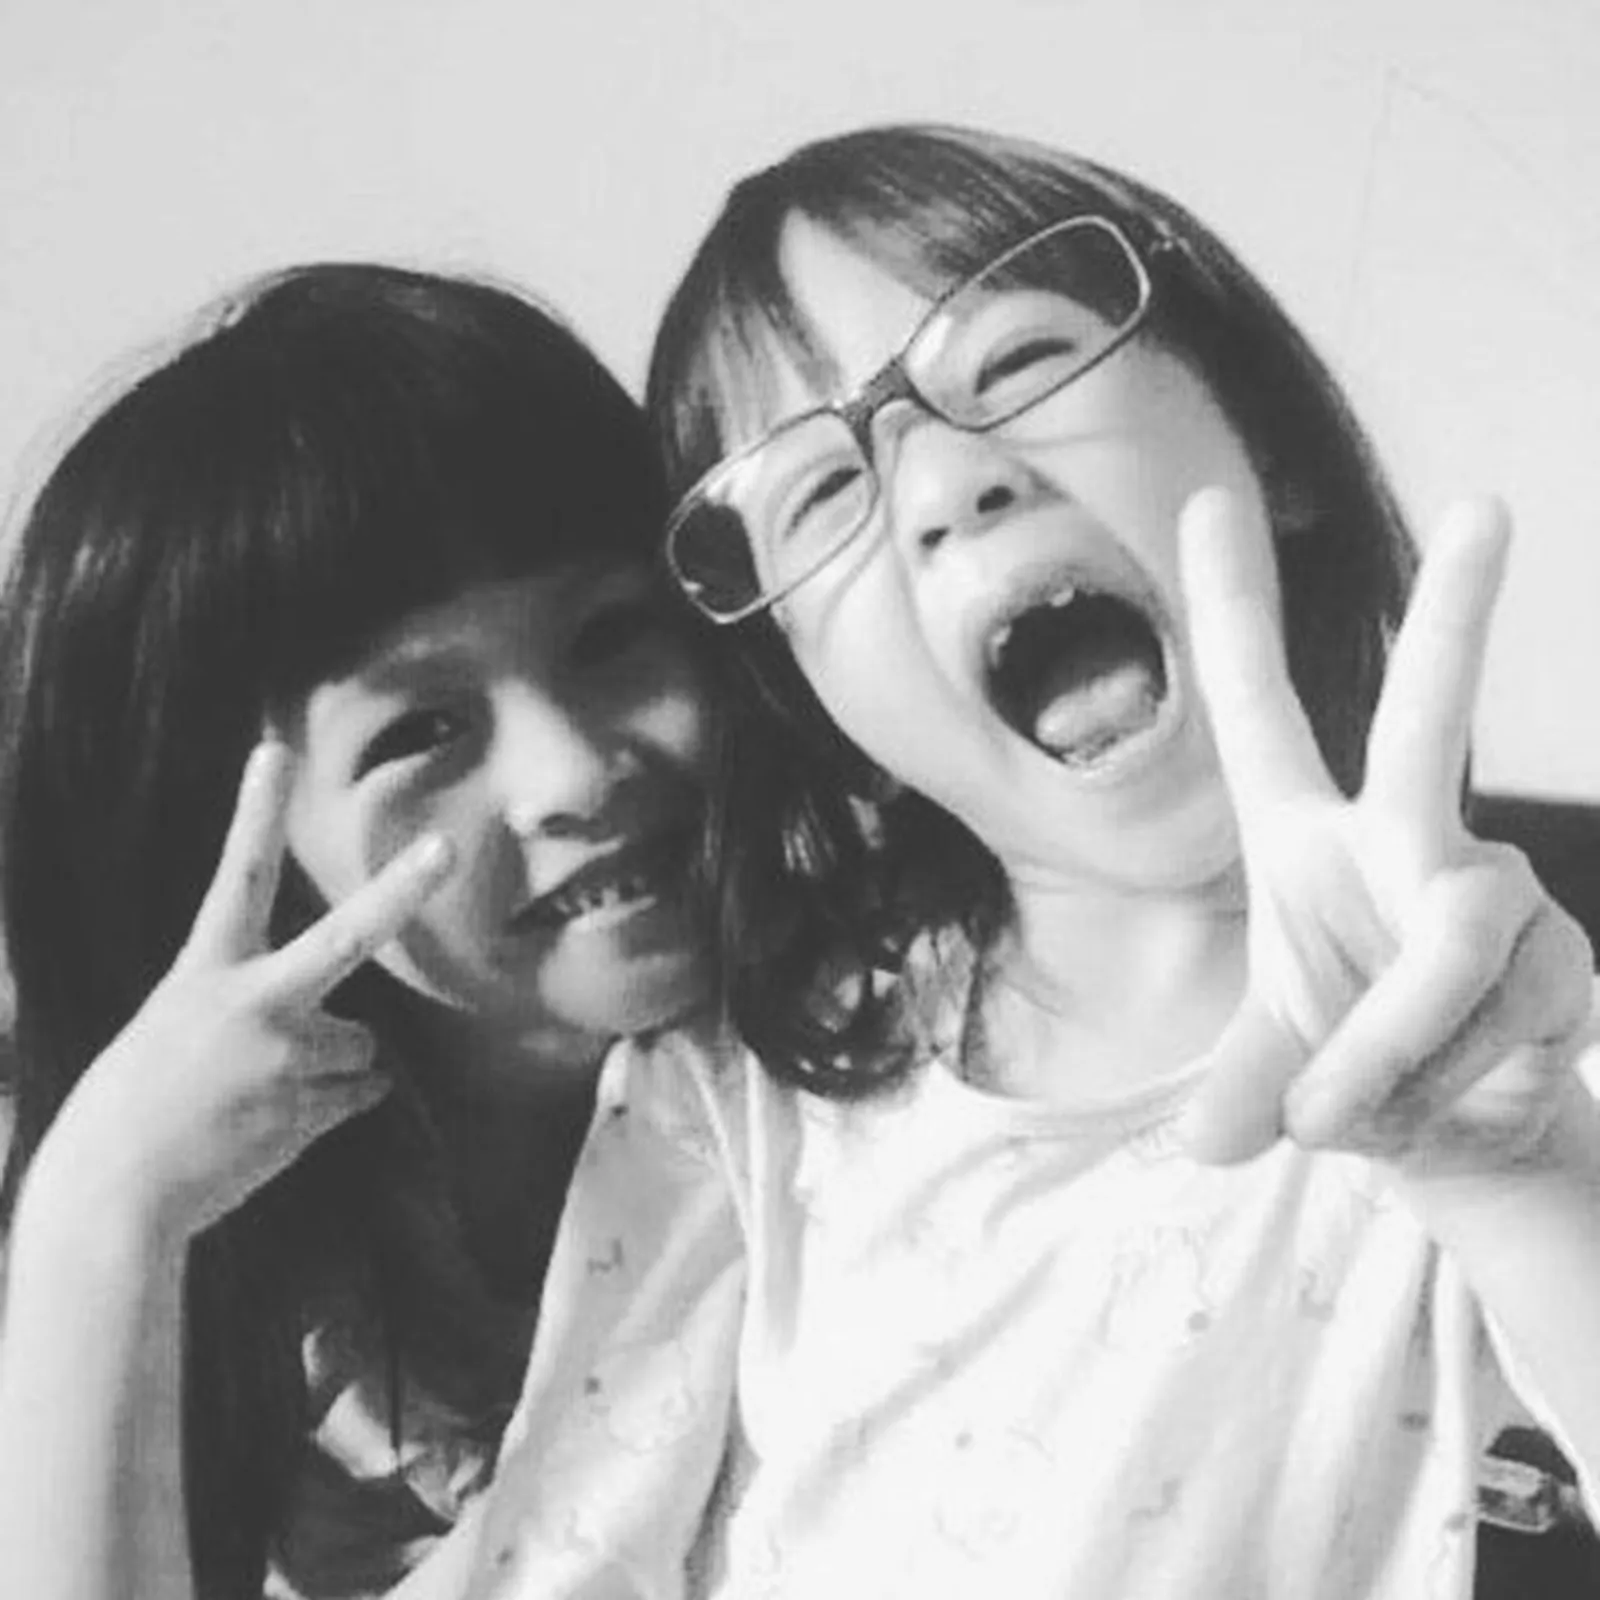 Sibling Goals! Ini Foto Transformasi Kyla dan Zara Eks 'JKT48'